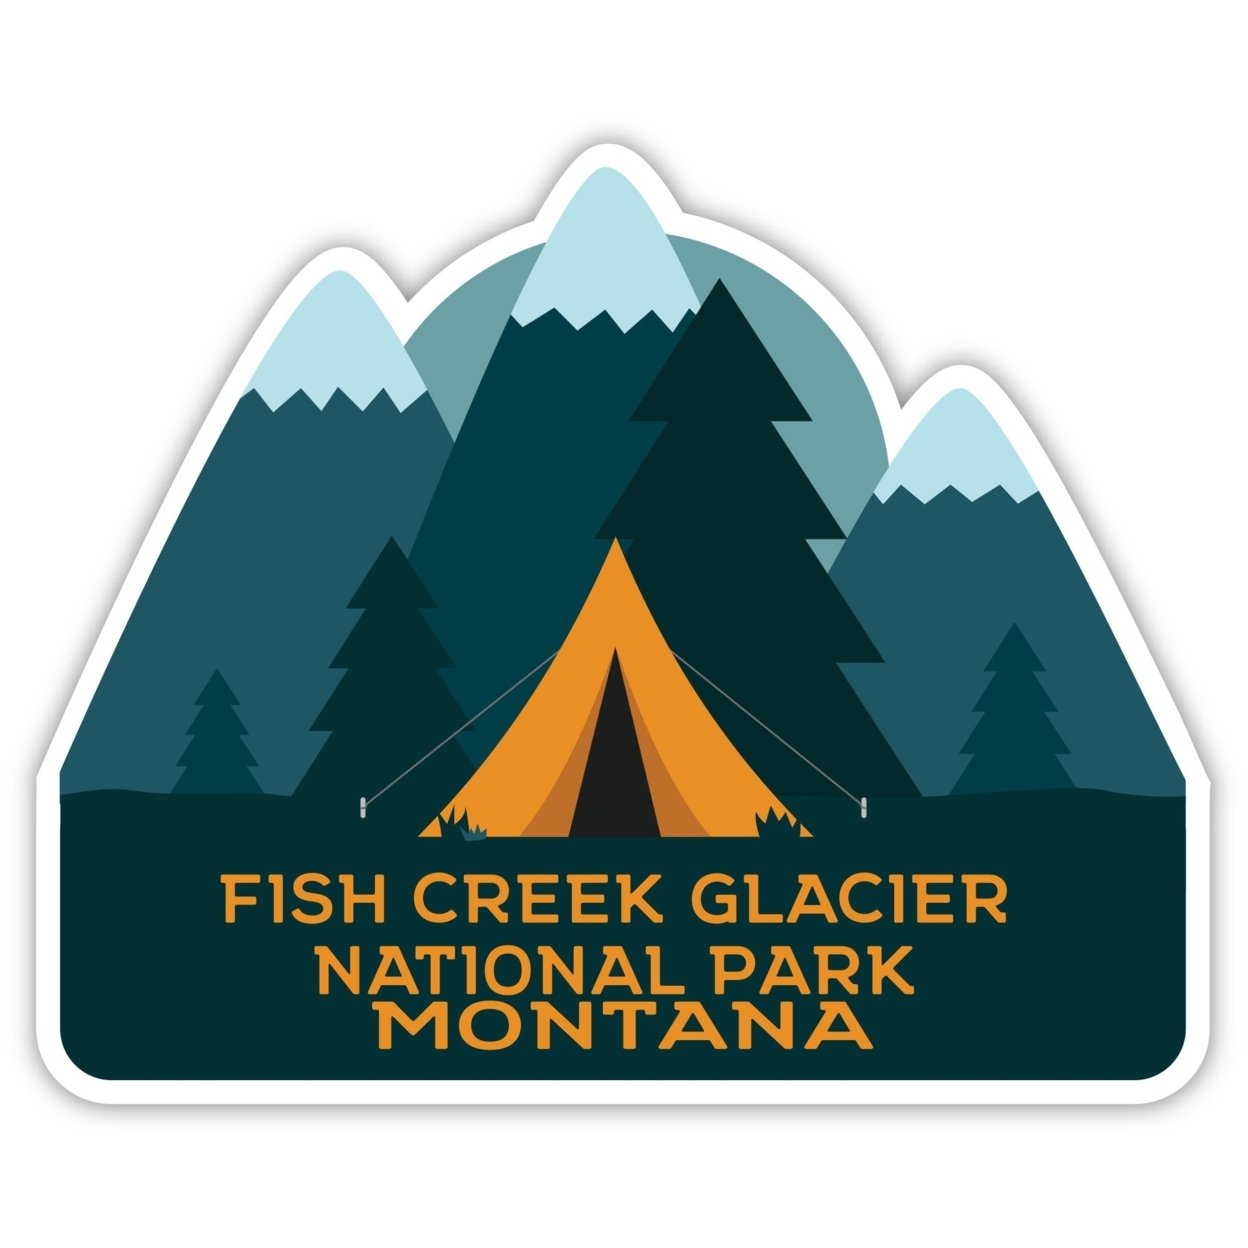 Fish Creek Glacier National Park Montana Souvenir Decorative Stickers (Choose Theme And Size) - Single Unit, 4-Inch, Tent